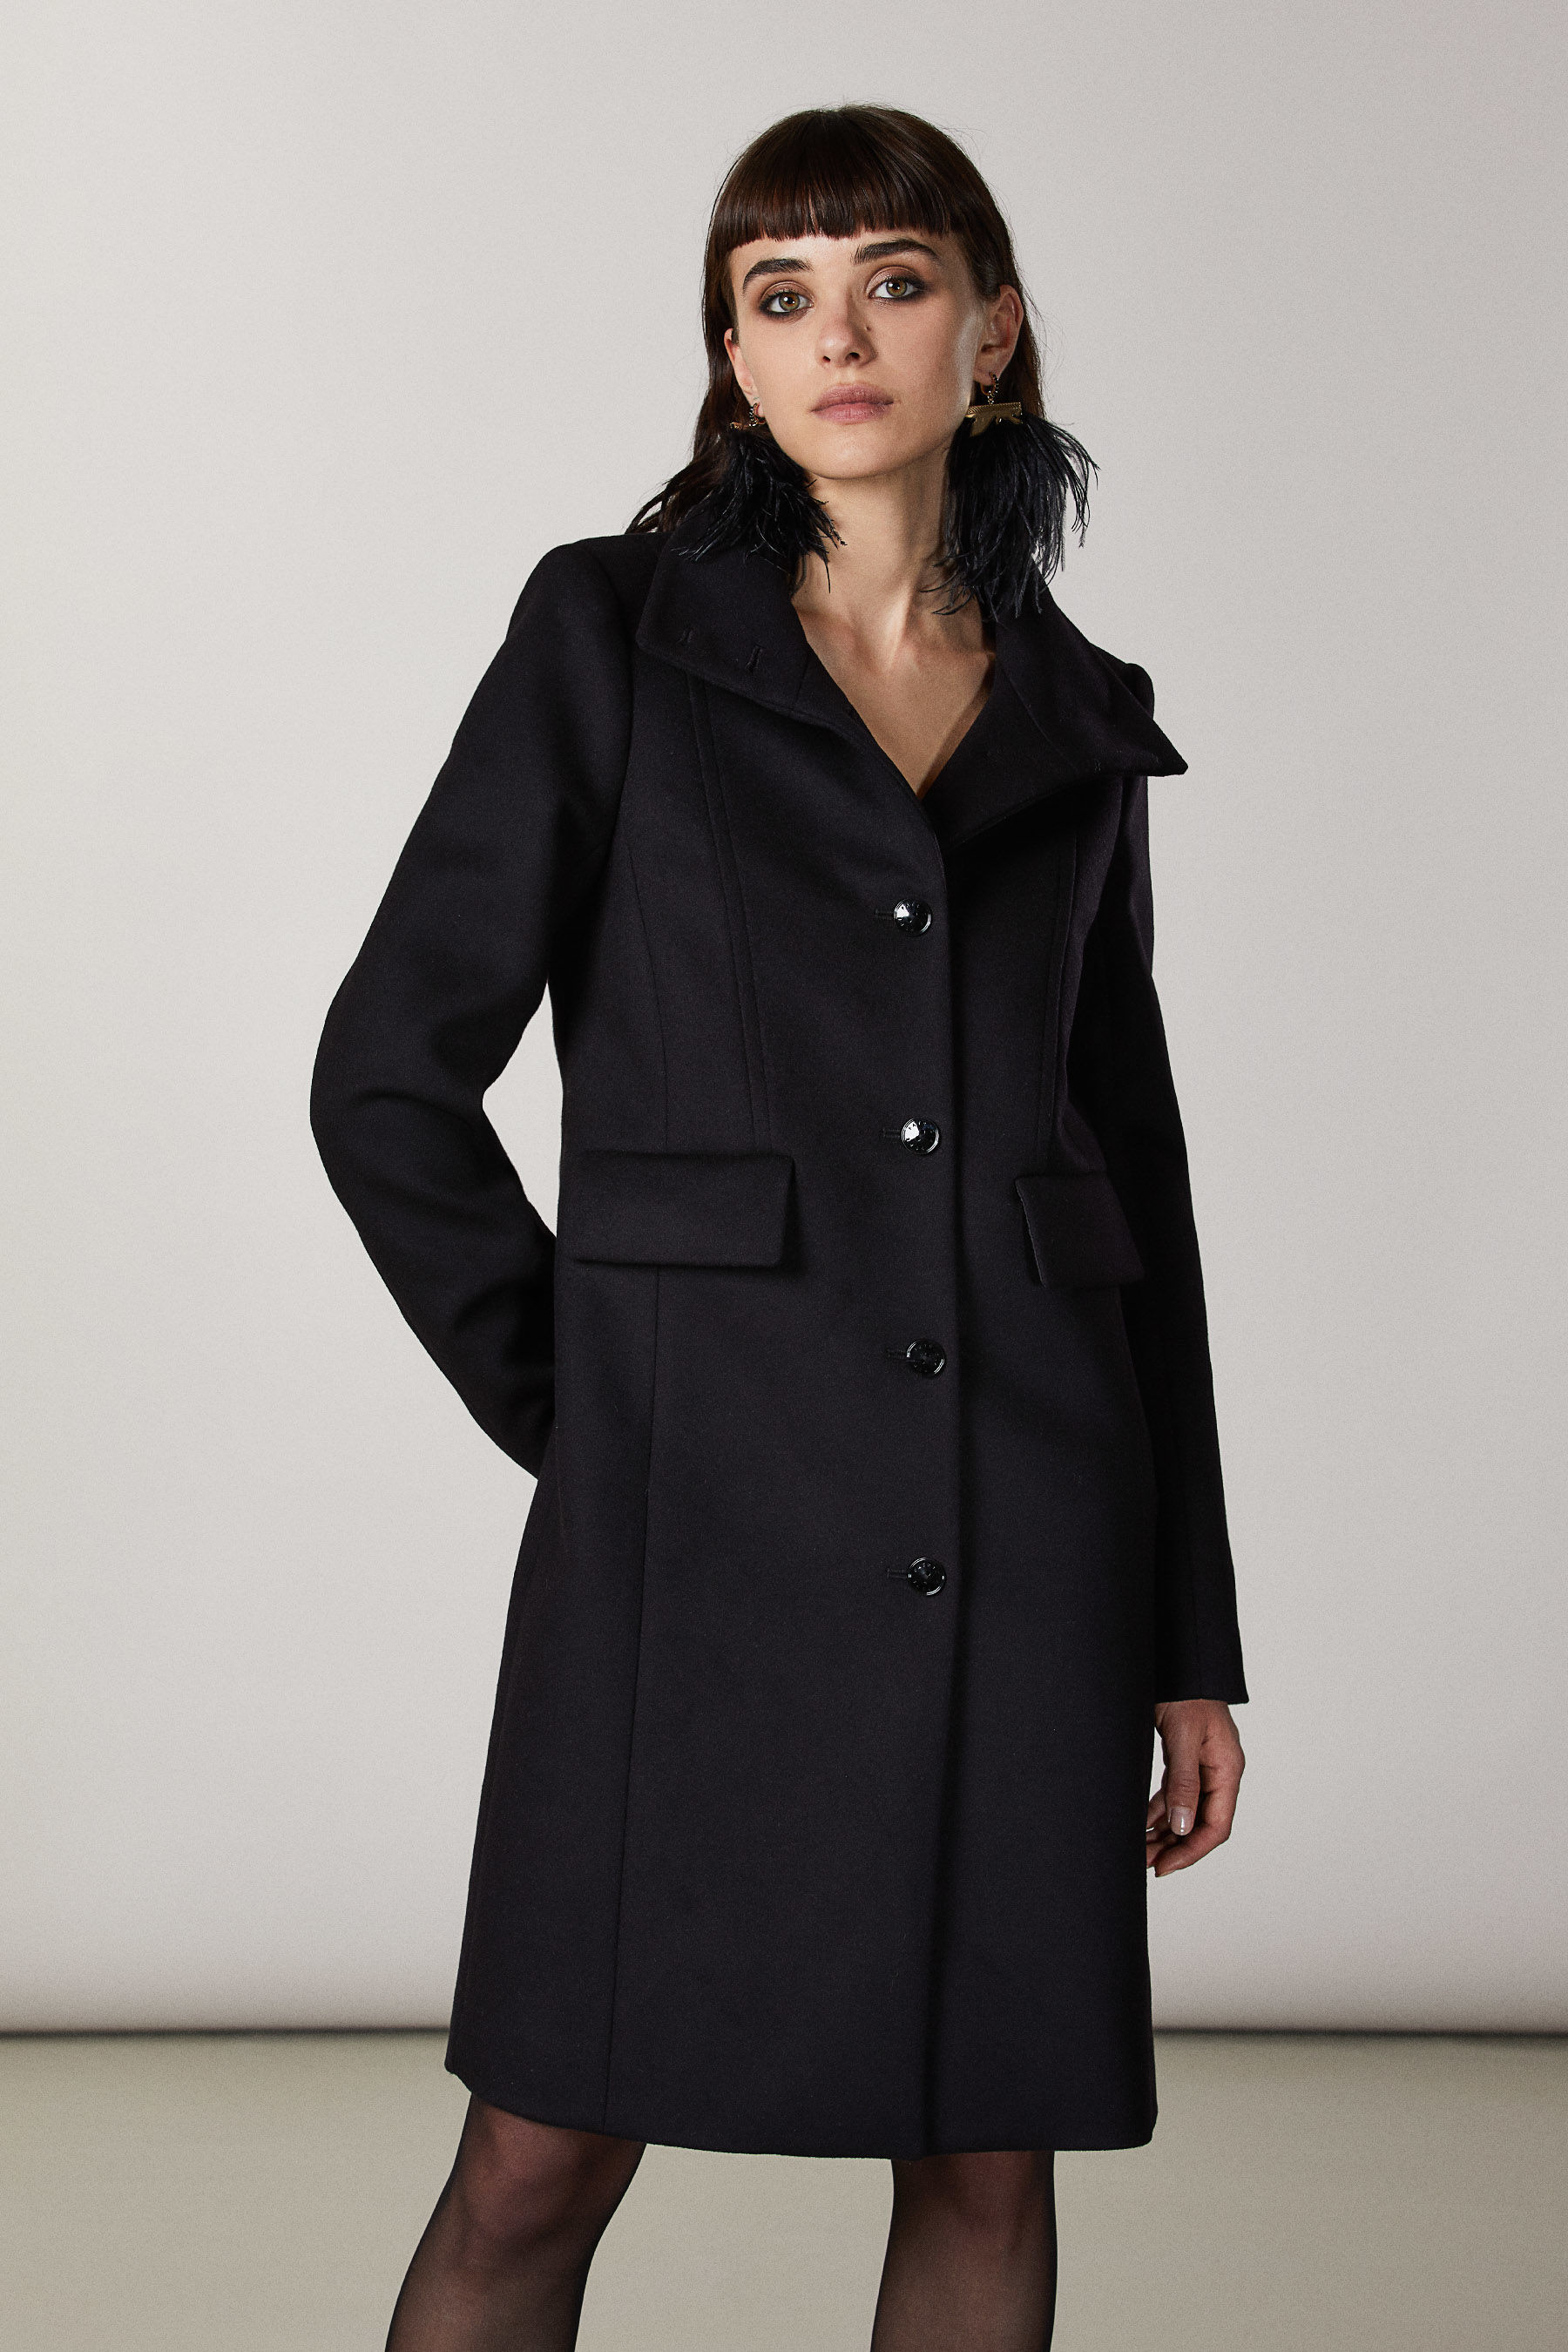 CappottoPatrizia Pepe in Cotone di colore Nero Donna Abbigliamento da Cappotti da Giacconi e cappotti corti 